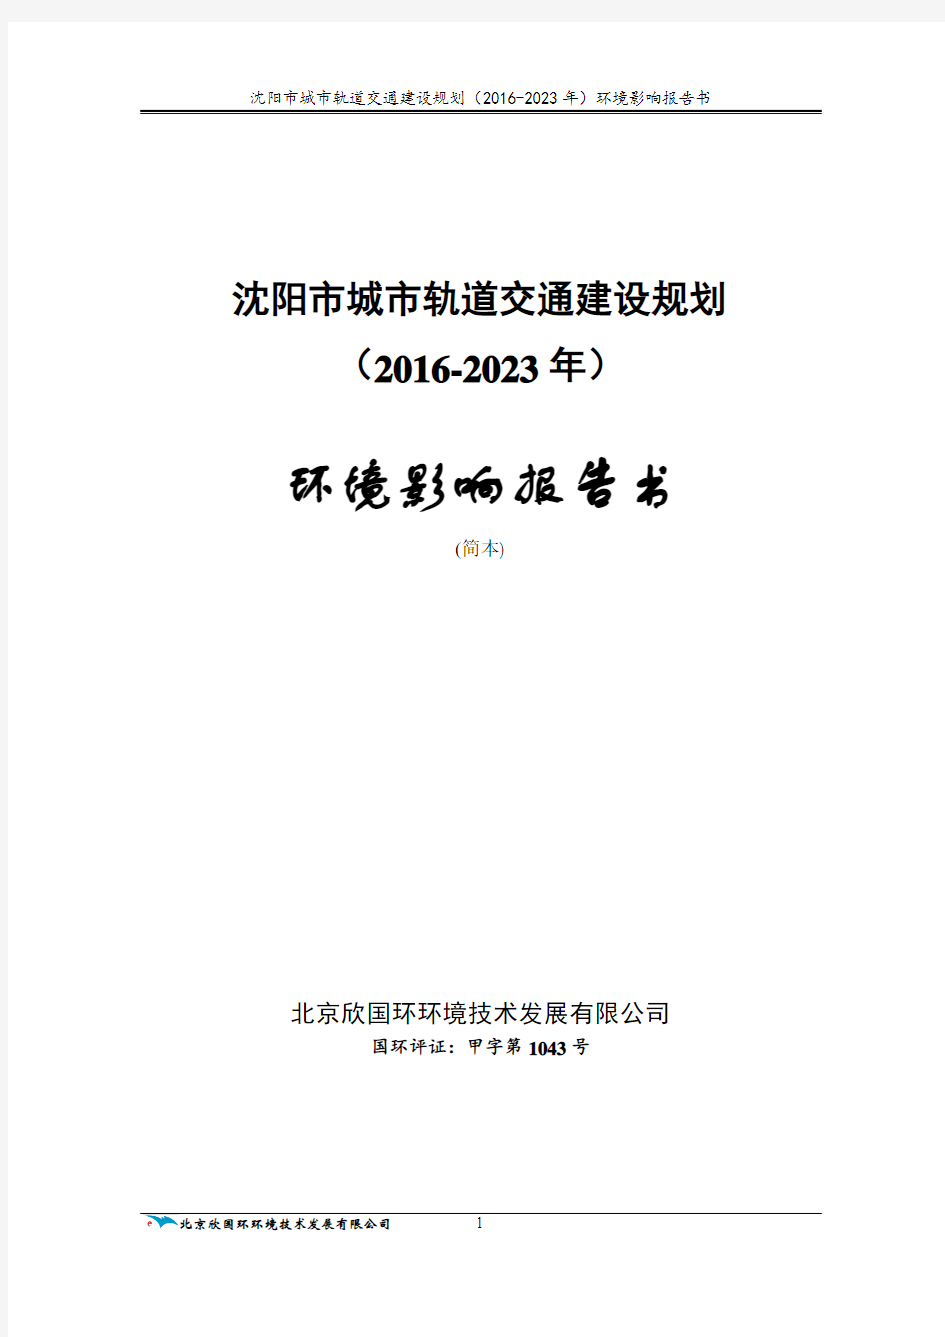 沈阳市城市轨道交通建设规划(2016-2023)环评(简本)